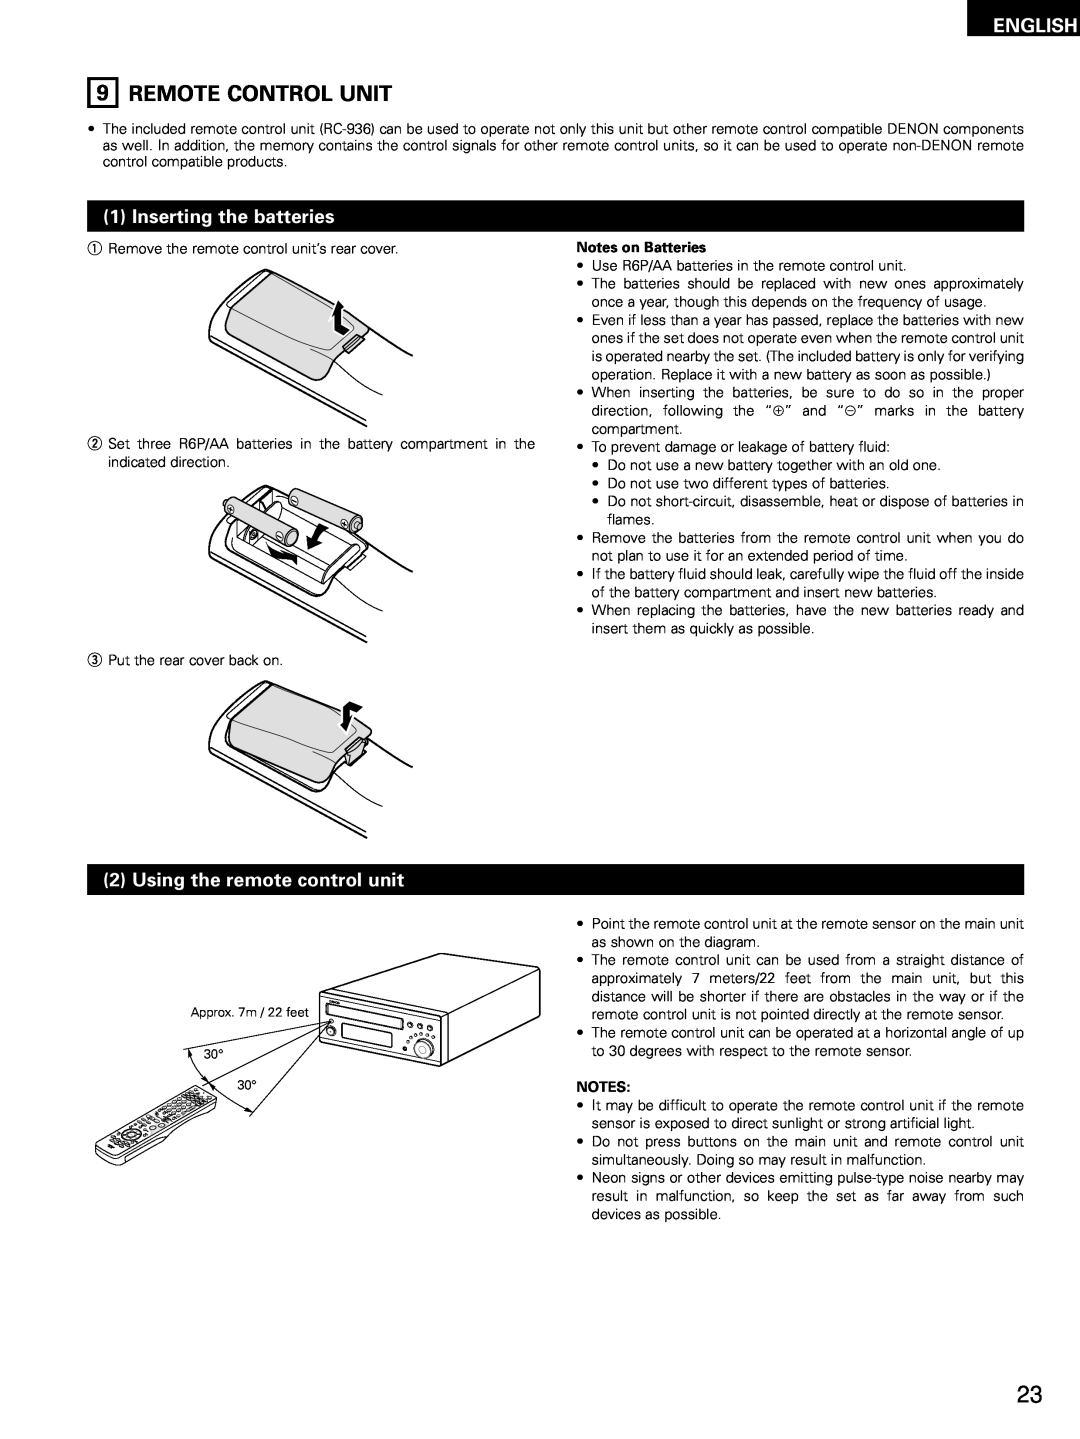 Denon ADV-M51 9REMOTE CONTROL UNIT, Inserting the batteries, Using the remote control unit, English, Notes on Batteries 